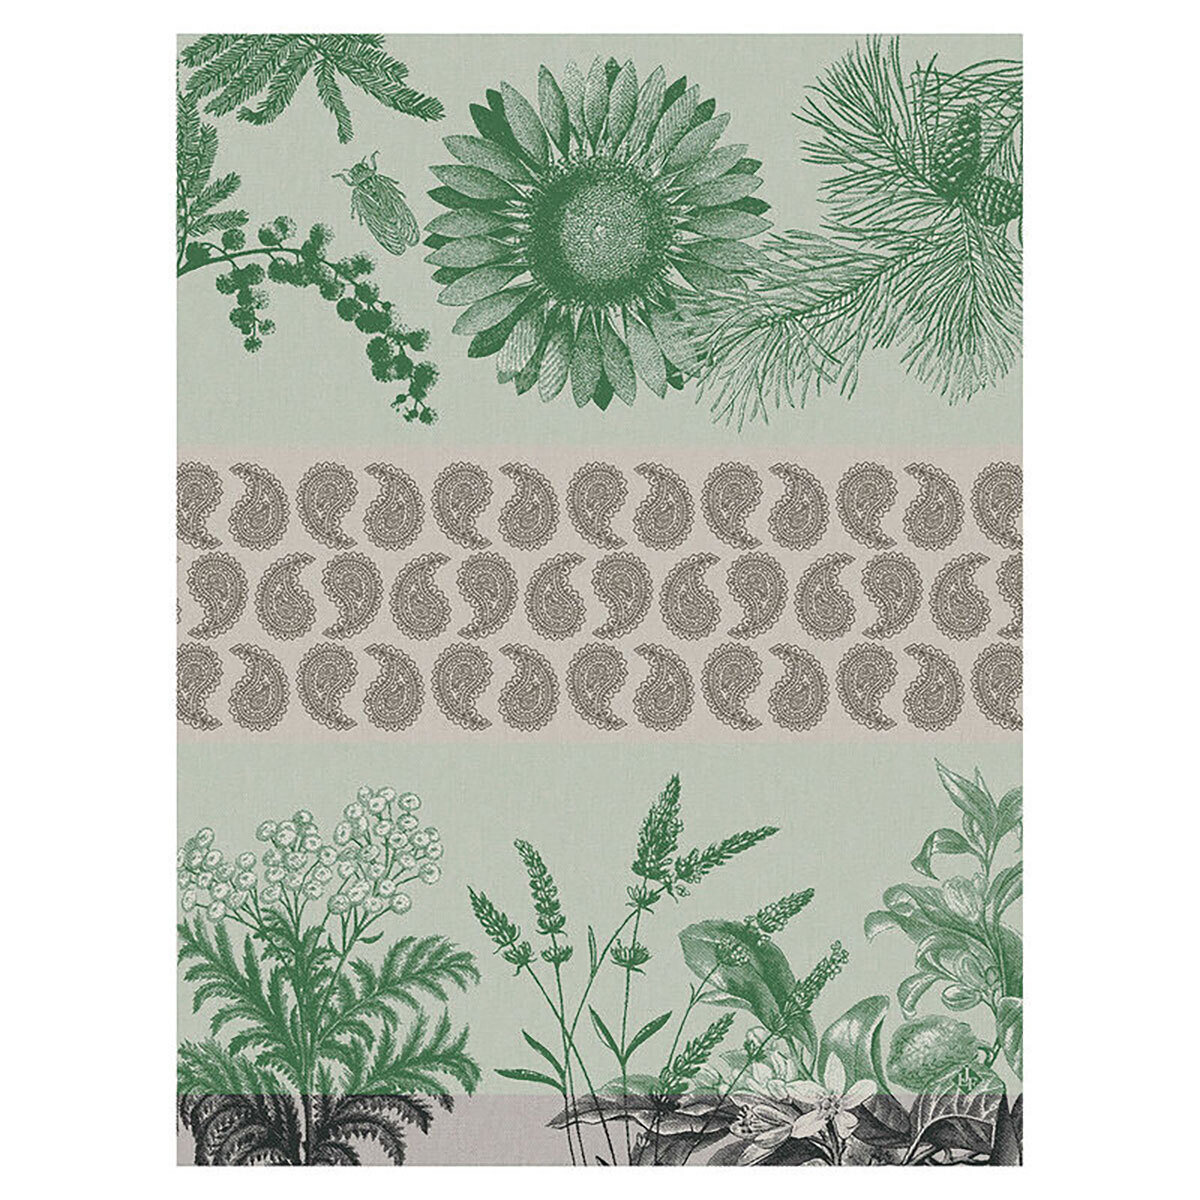 Le Jacquard Francais Soleil Au Jardin Green Tea Towel 24 x 31 Inch 27564 Set of 4